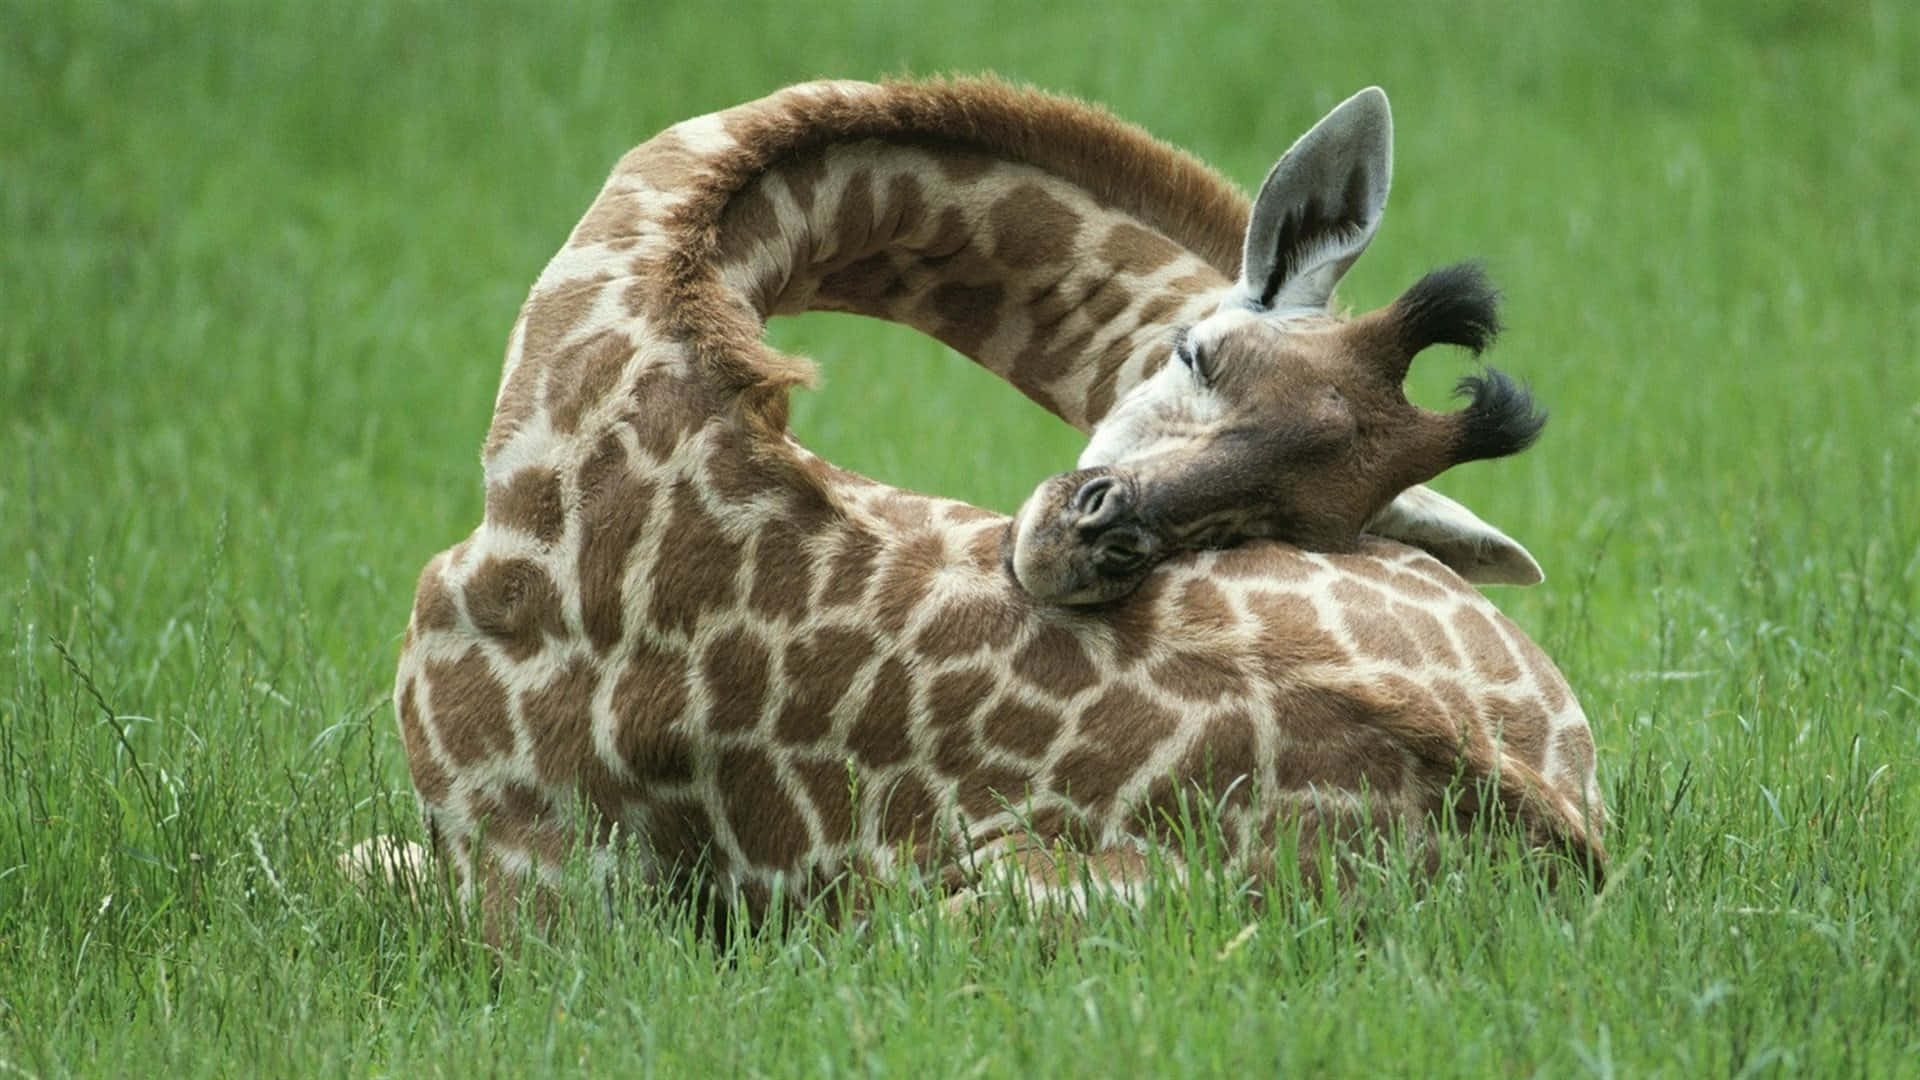 Keep your head up - a graceful Giraffe